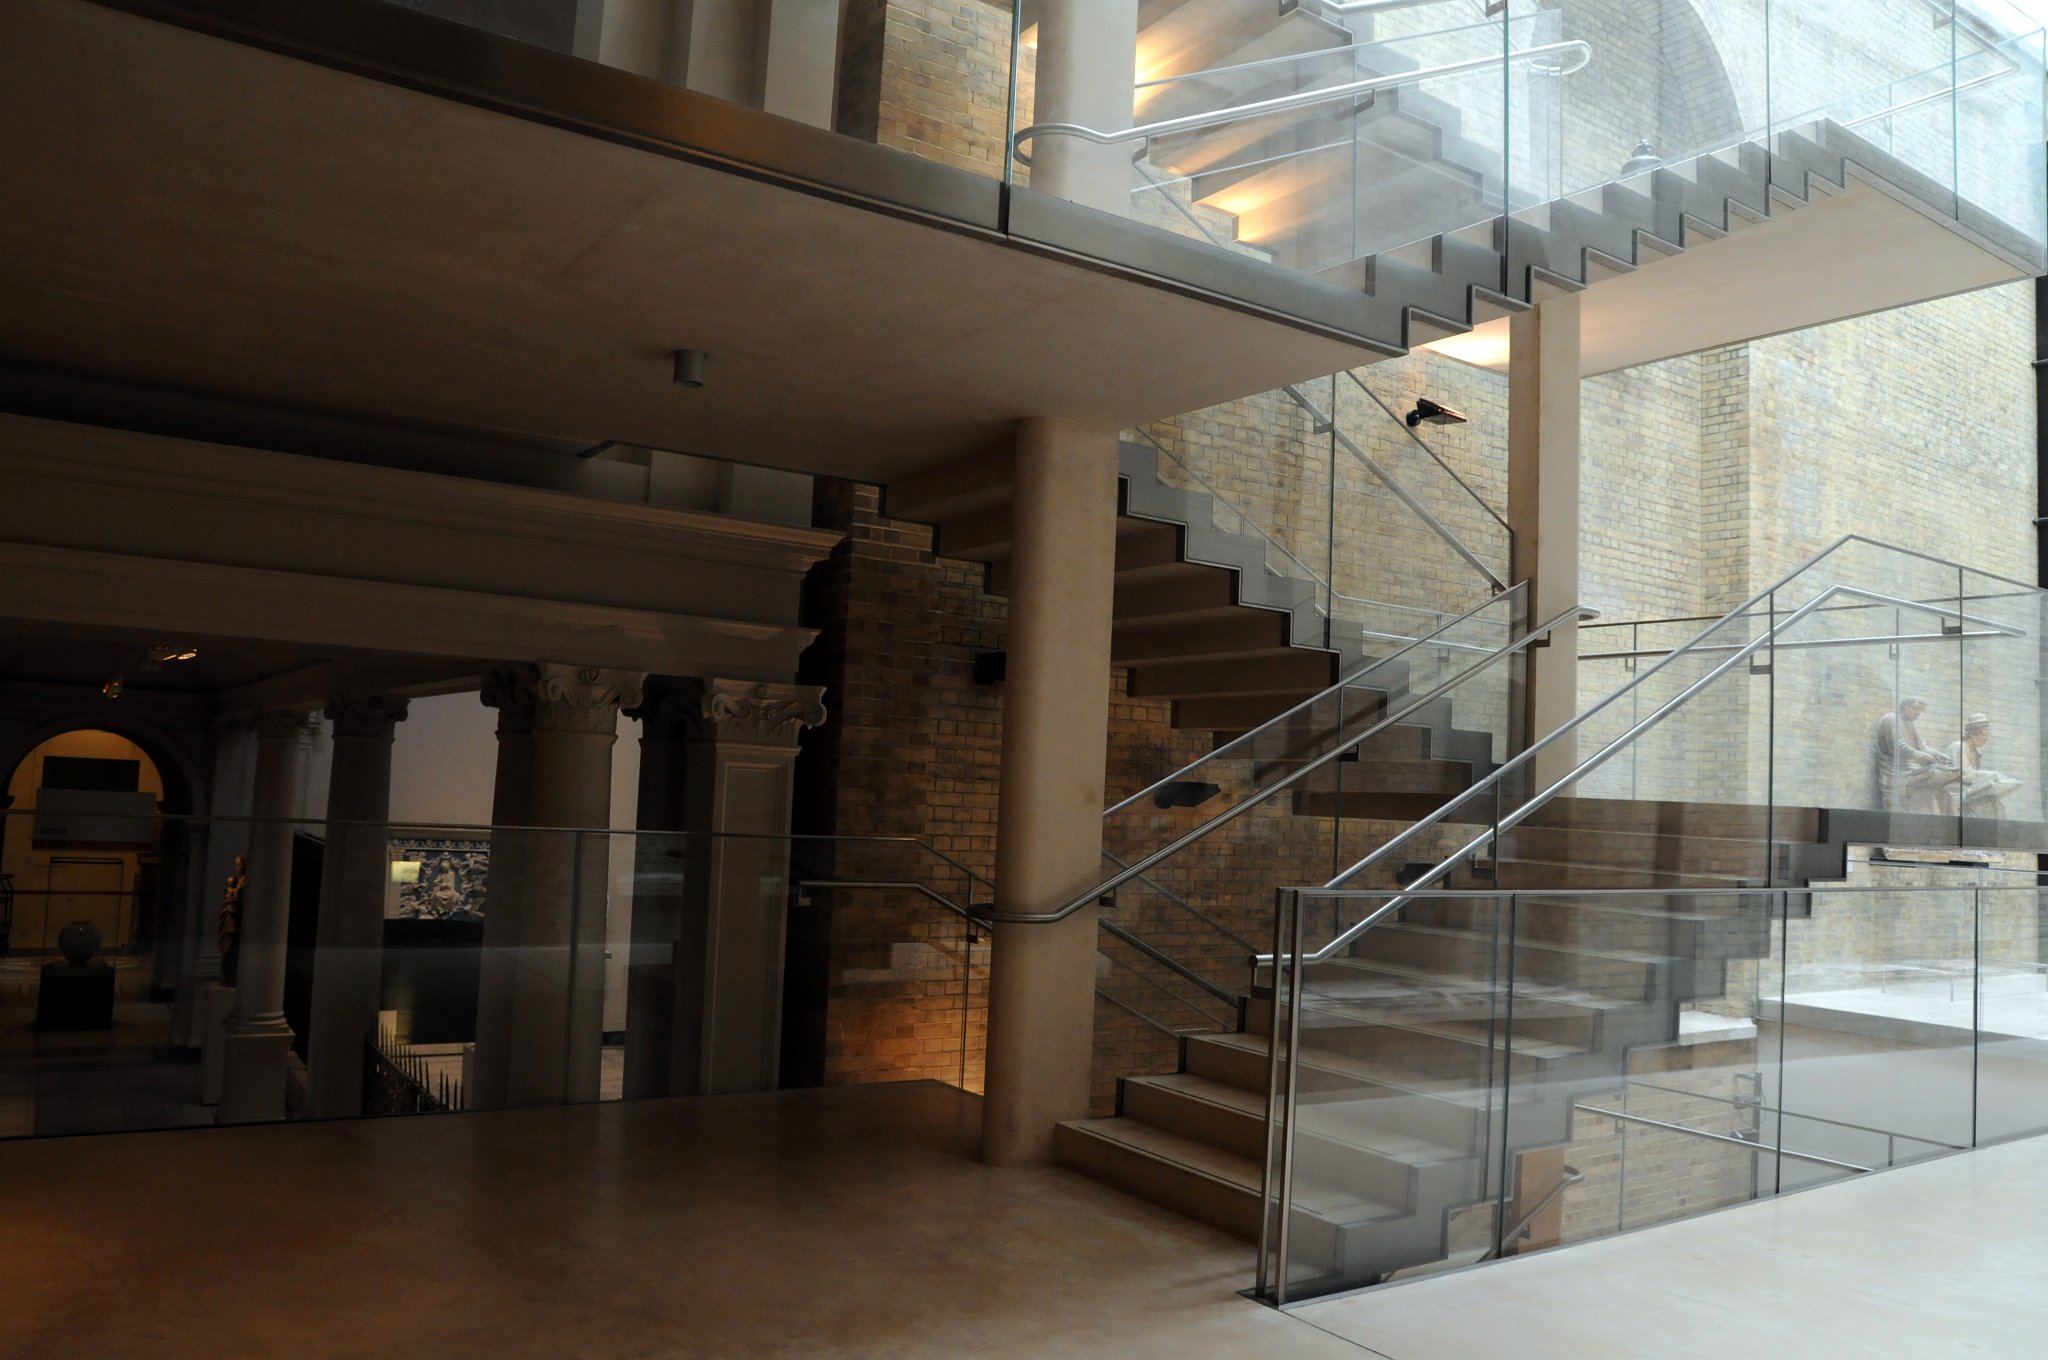 DSC_8128_1.jpg - Skleněné schodiště, které kontrastuje s historickou sbírkou artefaktů Victoriina a Albertova muzea.